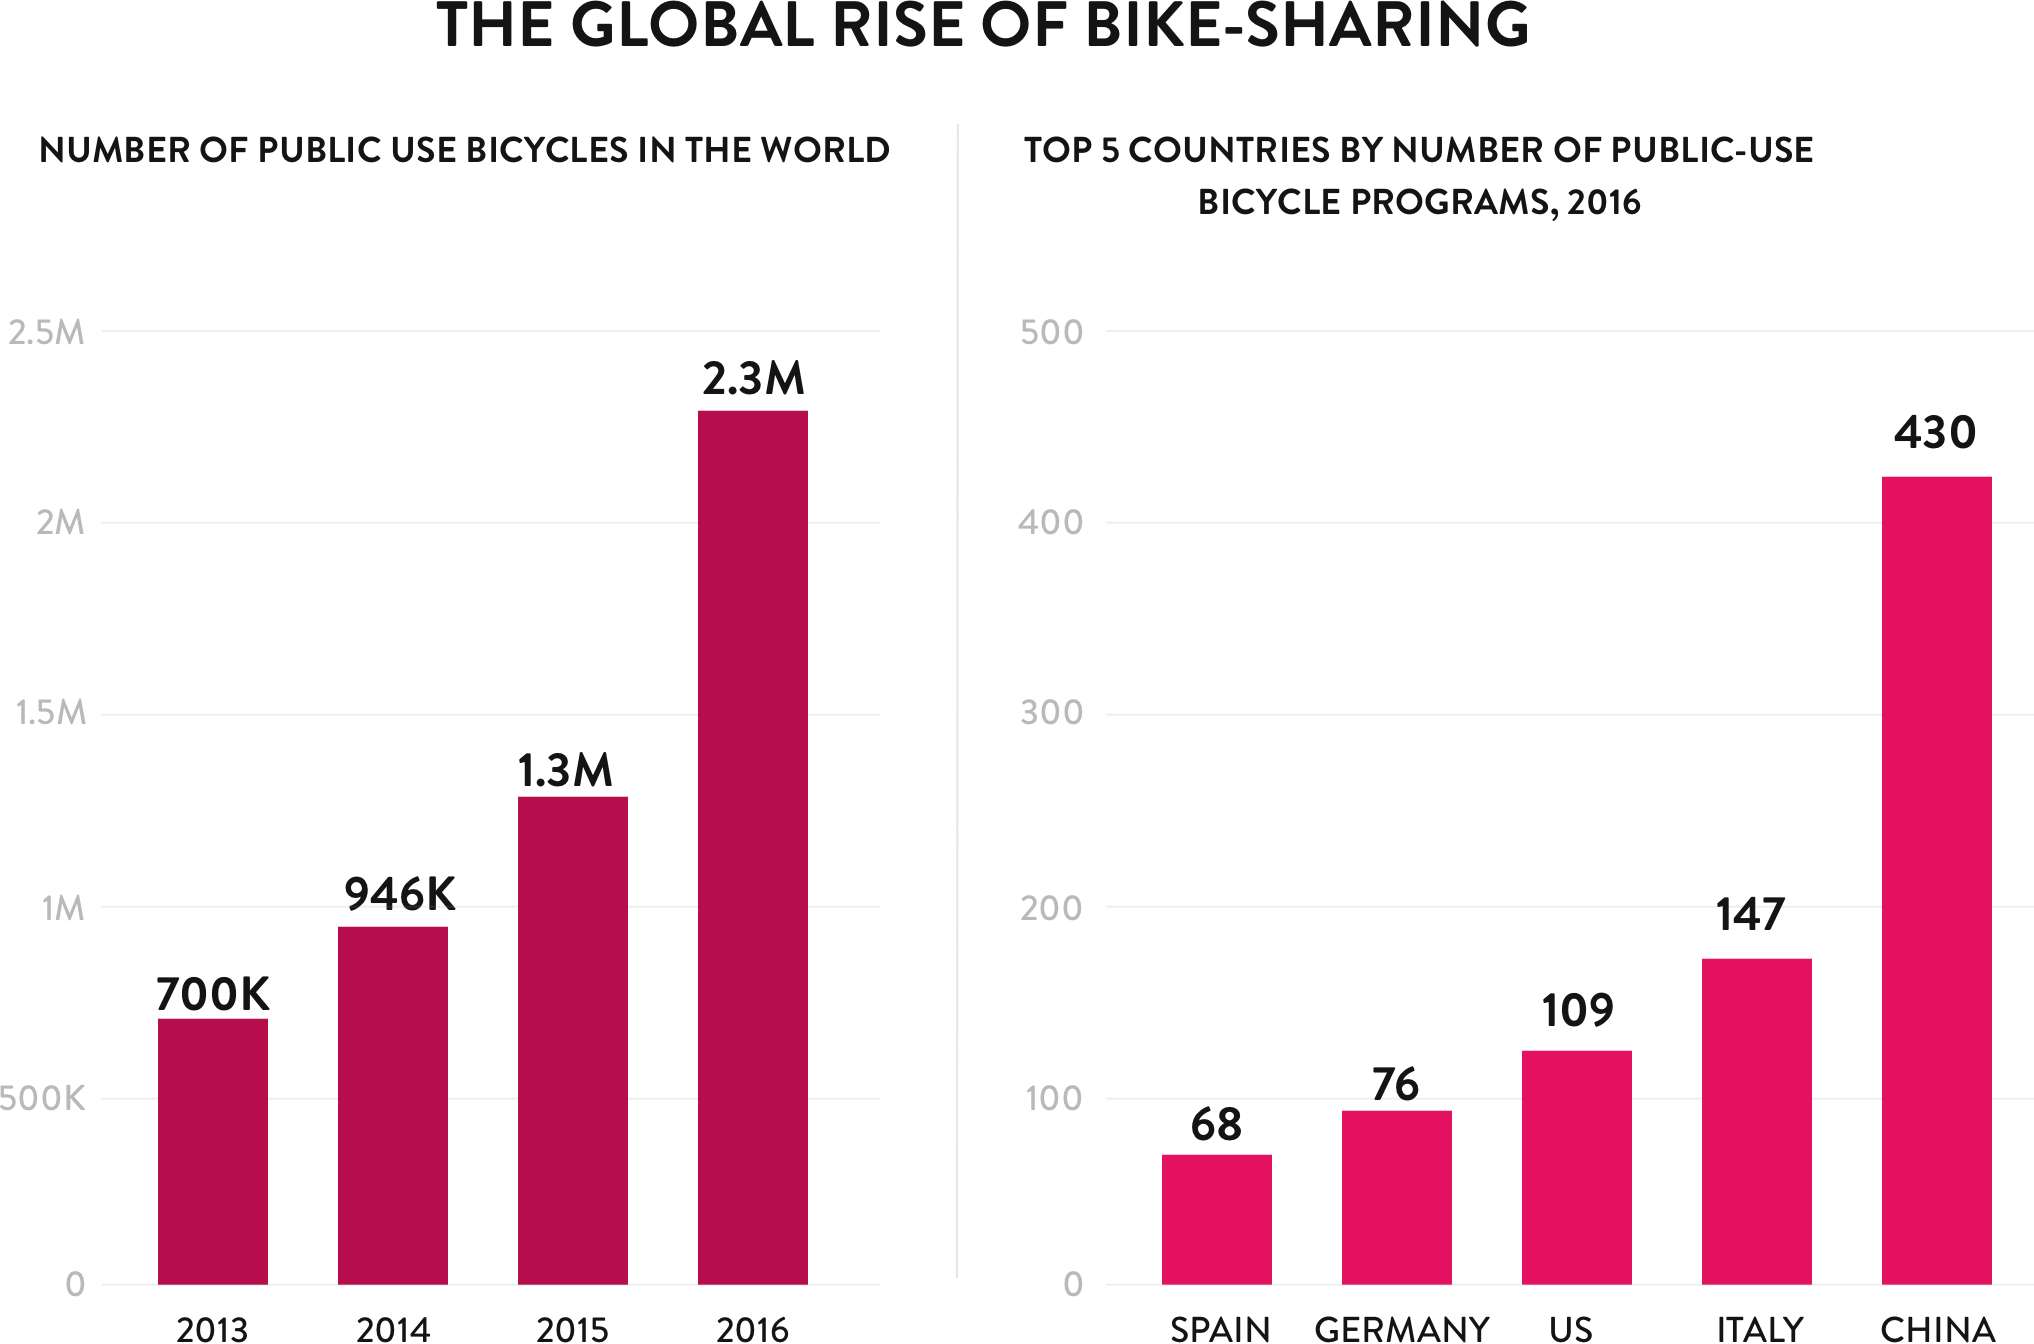 The global rise of bike-sharing